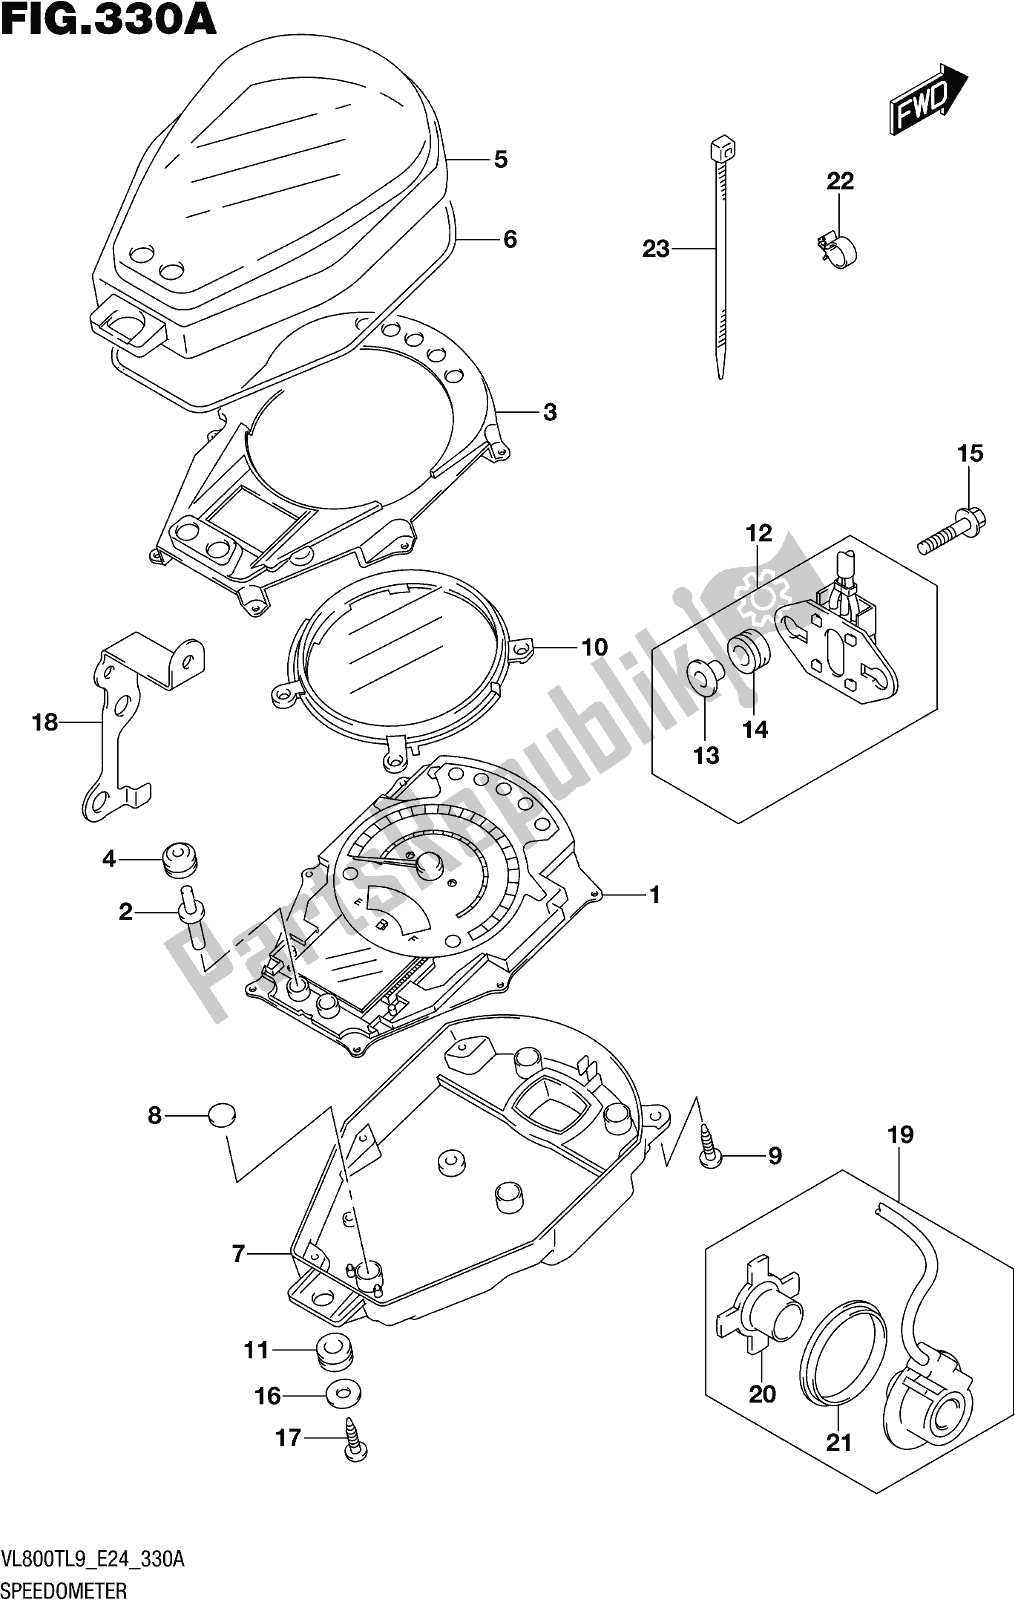 Toutes les pièces pour le Fig. 330a Speedometer du Suzuki VL 800T 2019